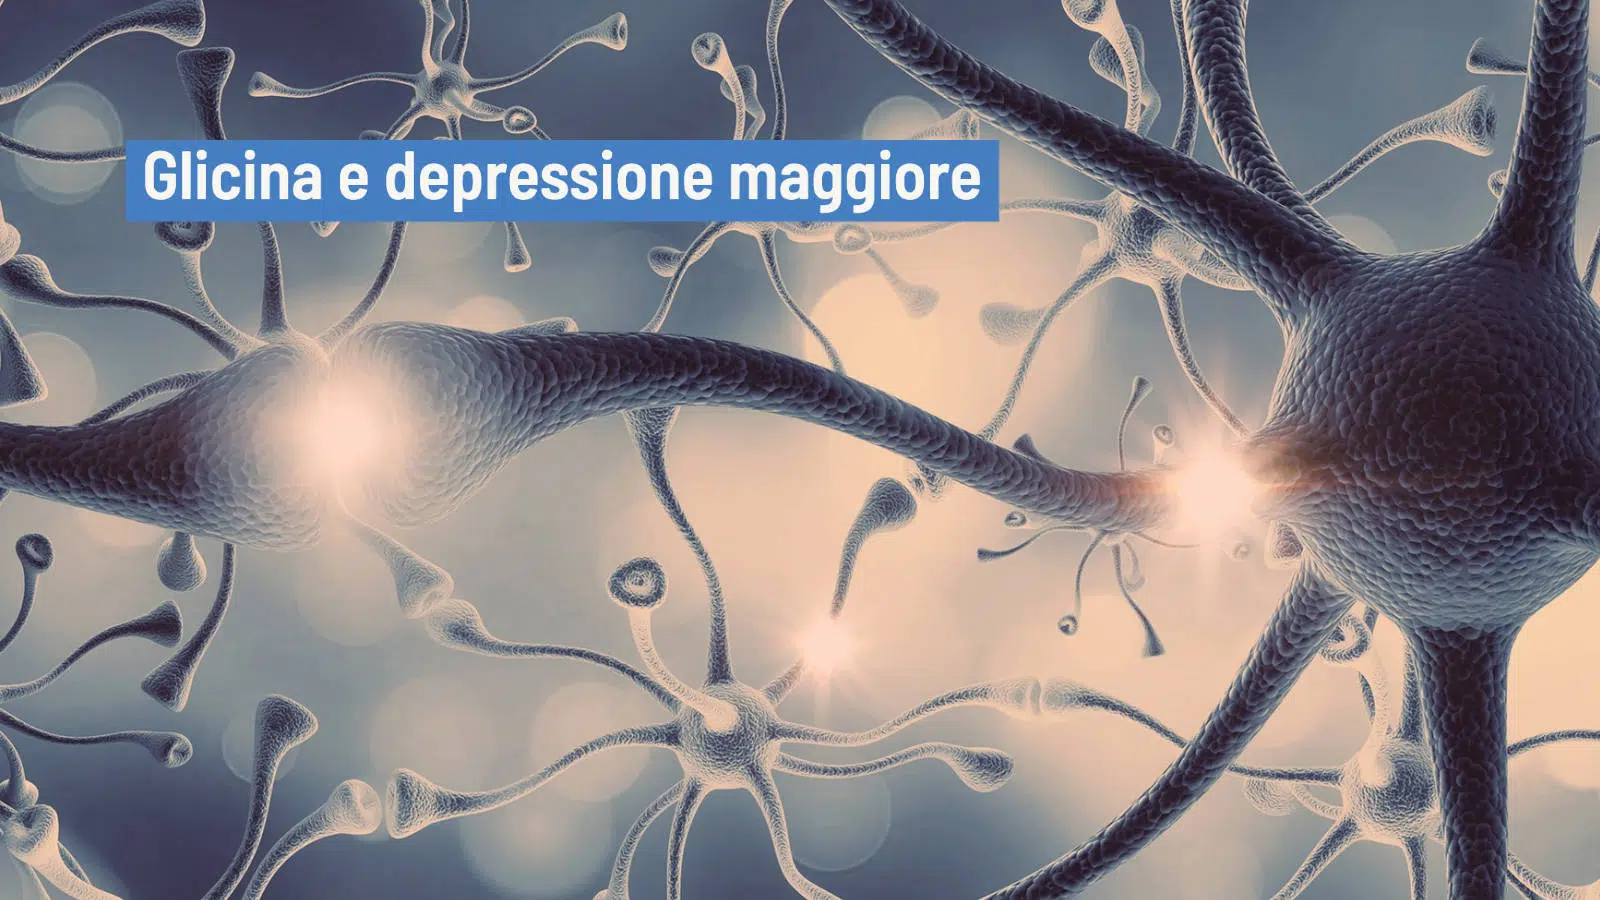 Il legame tra la glicina e il disturbo depressivo maggiore